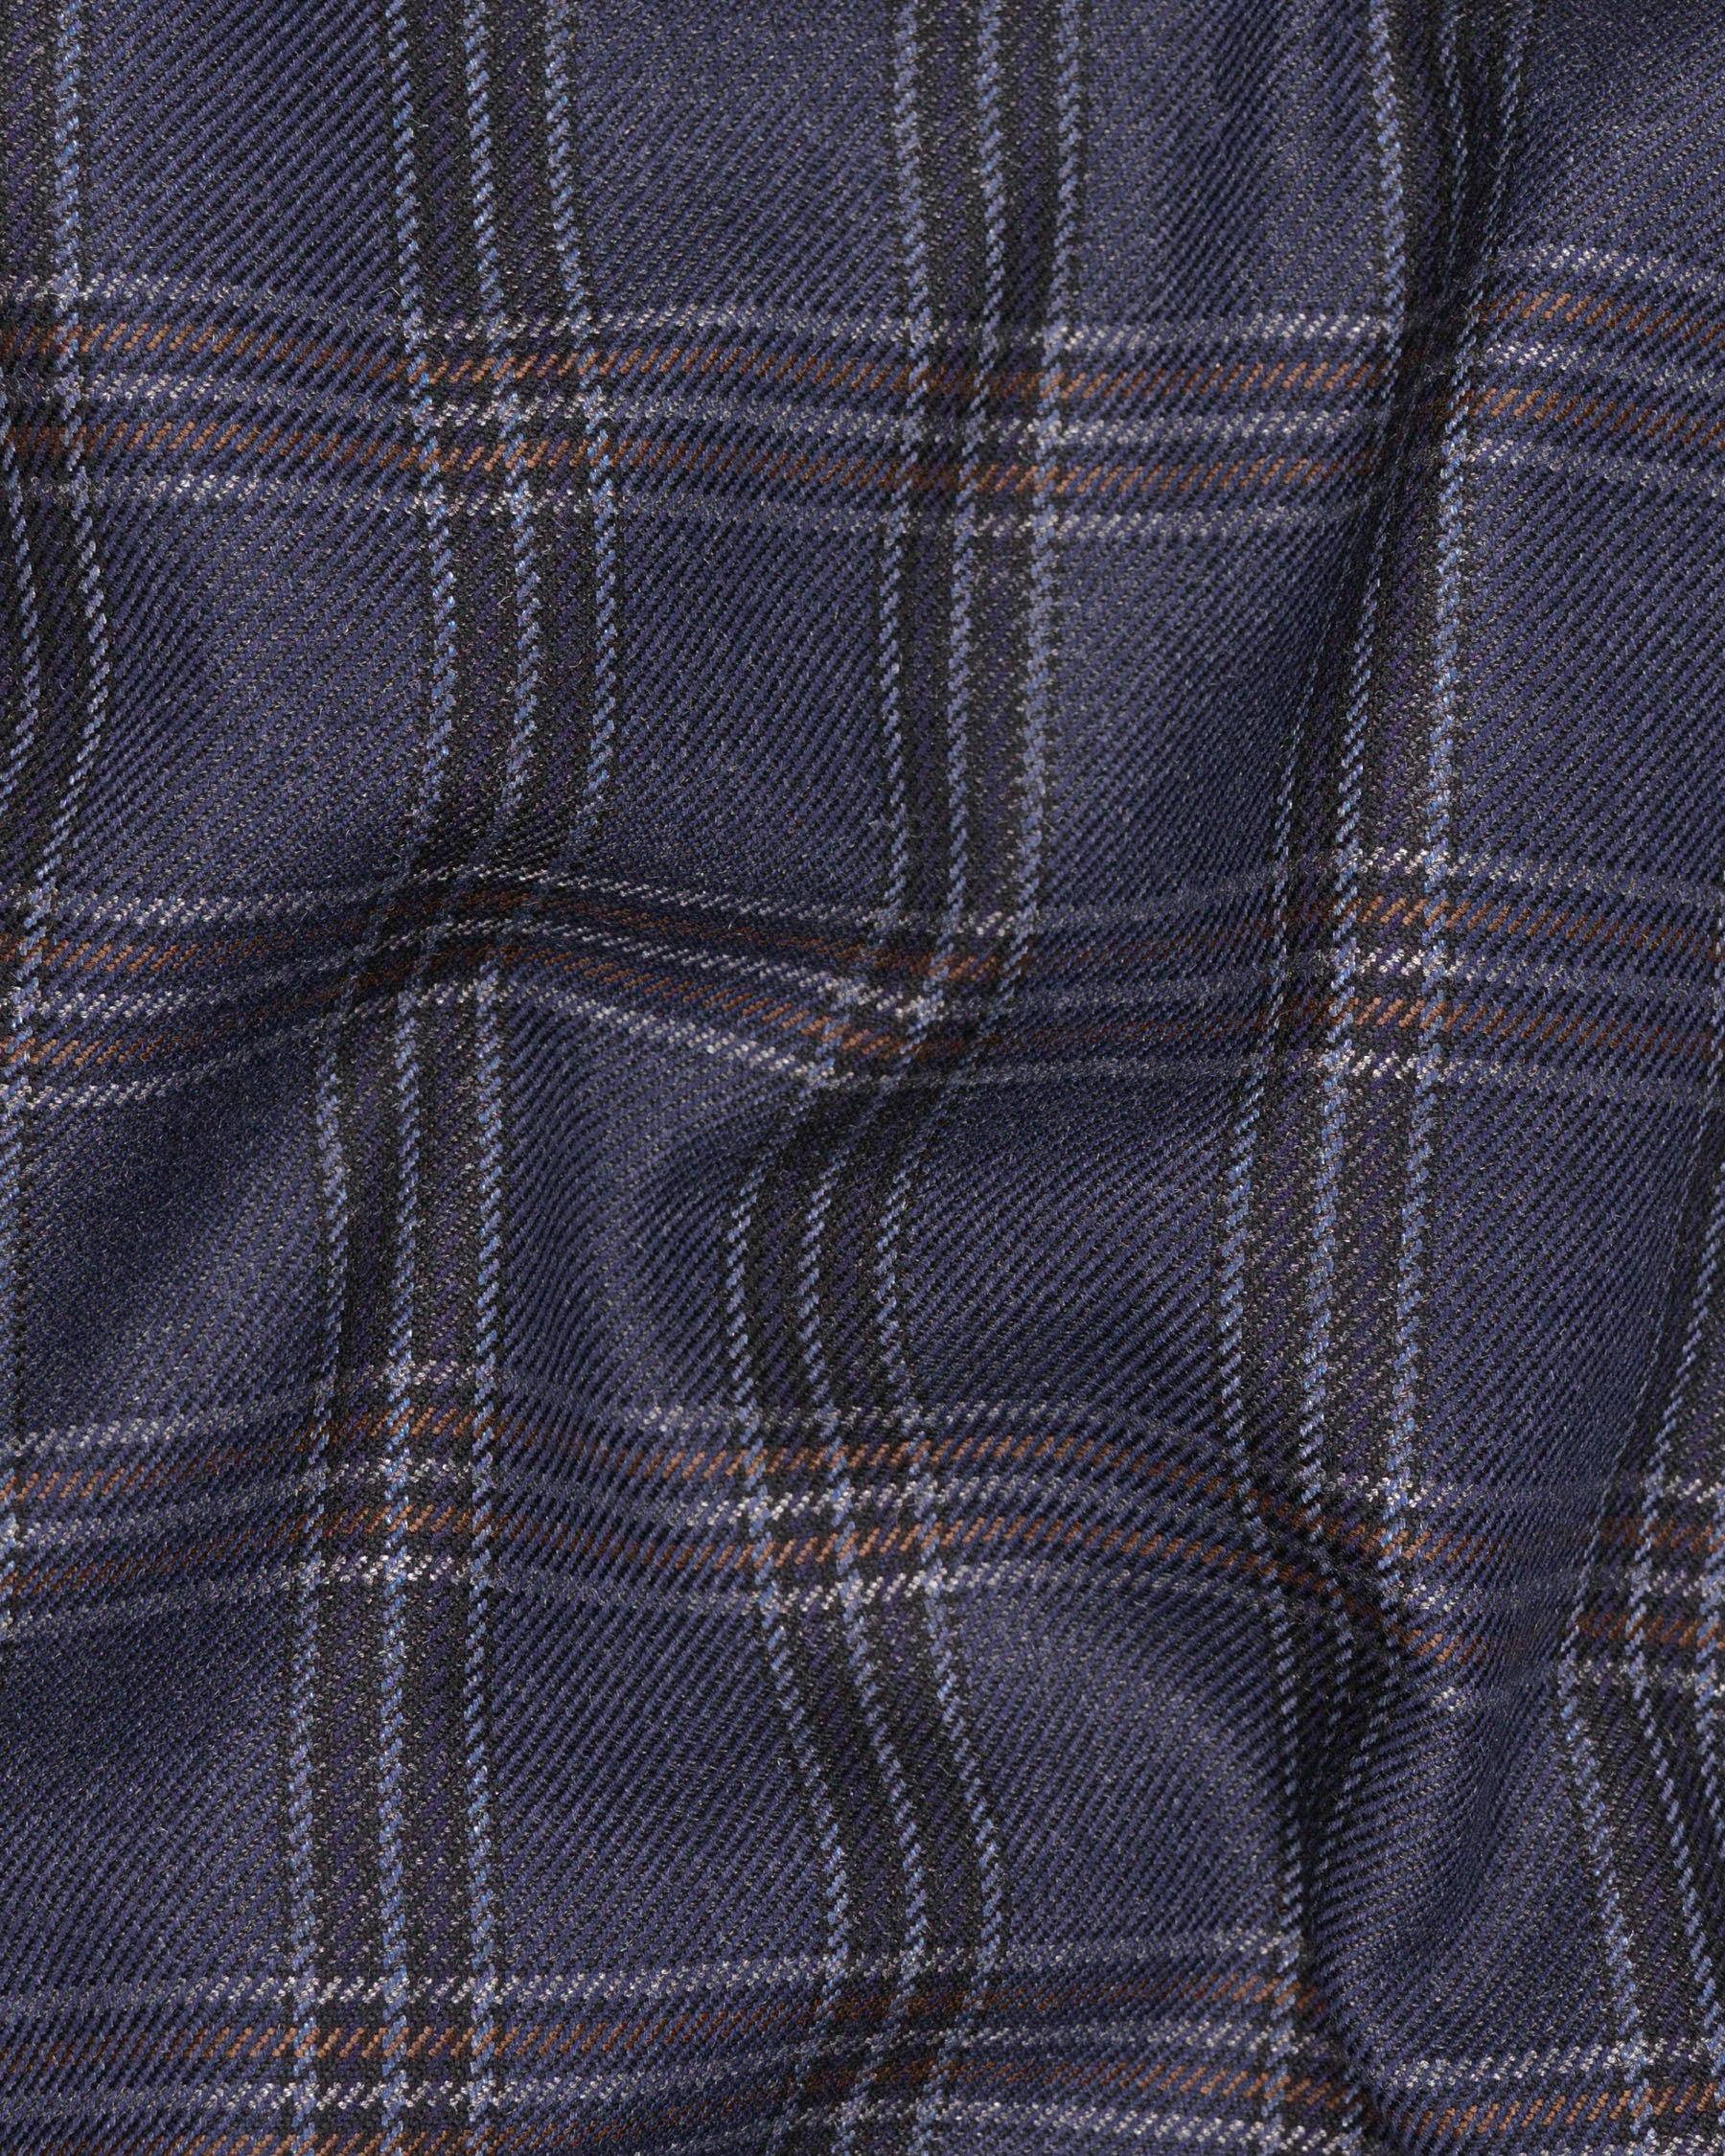 Licorice Blue Plaid heavyweight tweed Wool Rich Pant T1453-28, T1453-30, T1453-32, T1453-34, T1453-36, T1453-38, T1453-40, T1453-42, T1453-44